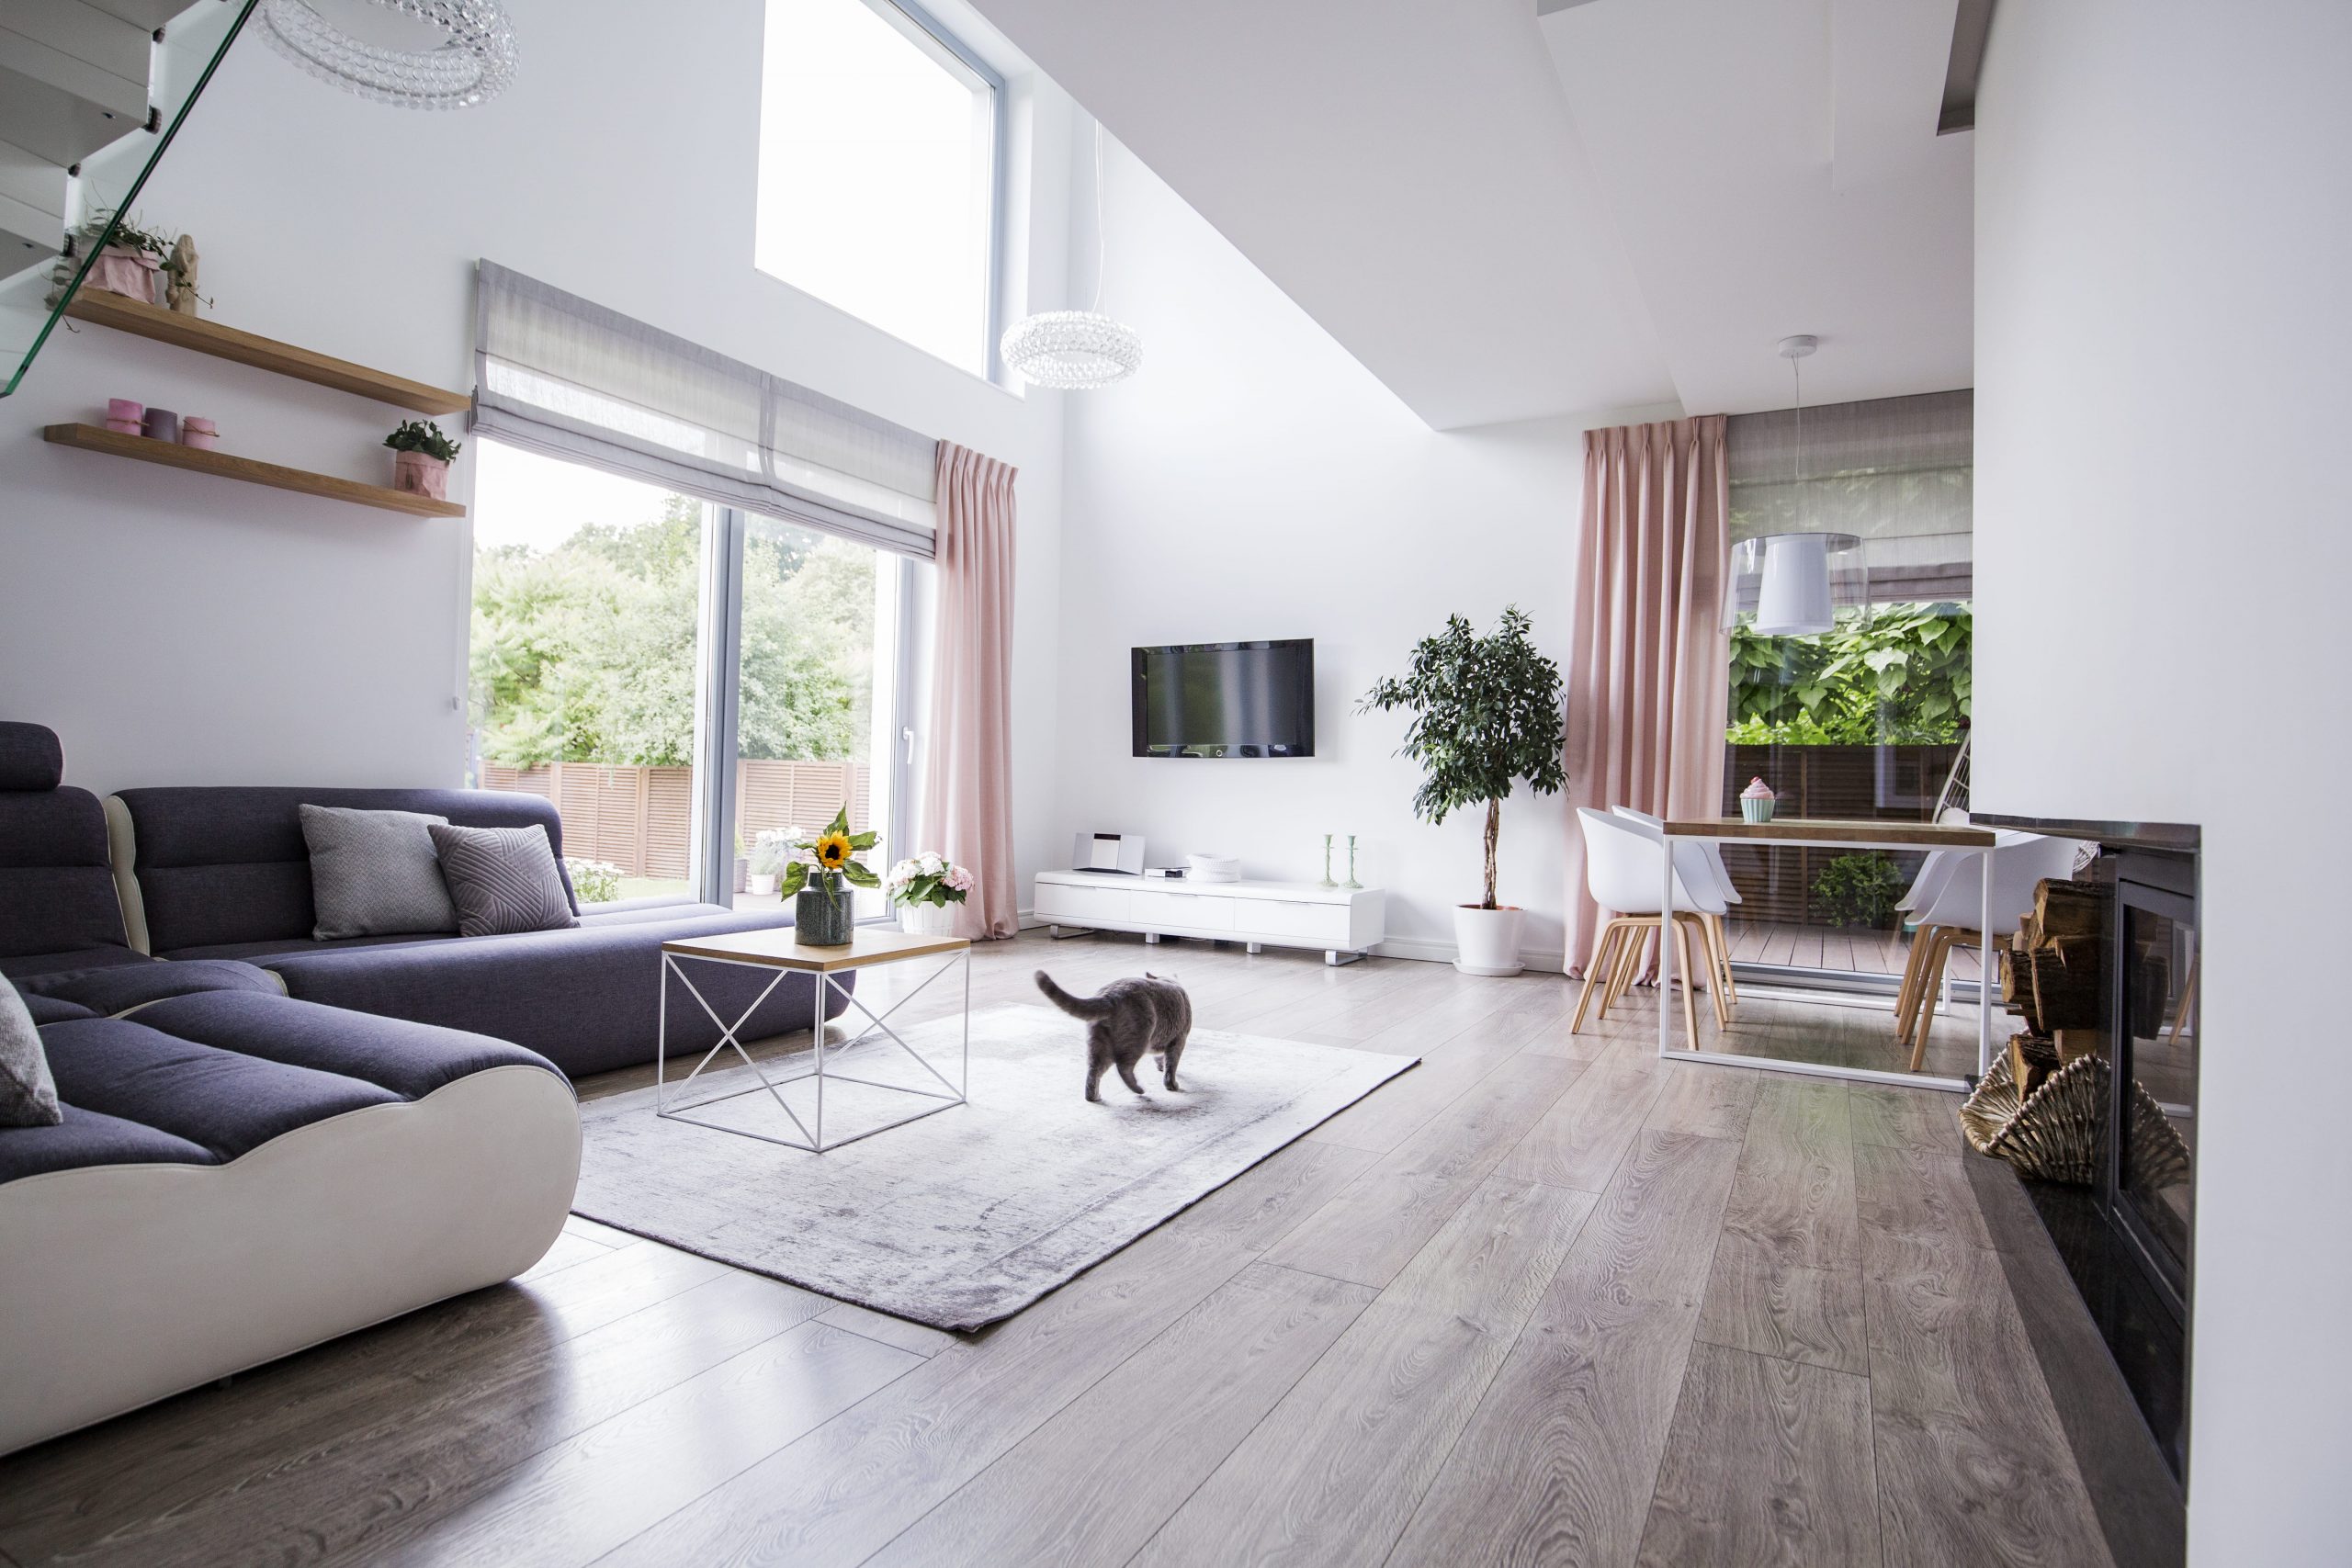 Sala de estar com piso vinílico com um gato em cima de um tapete no centro da sala